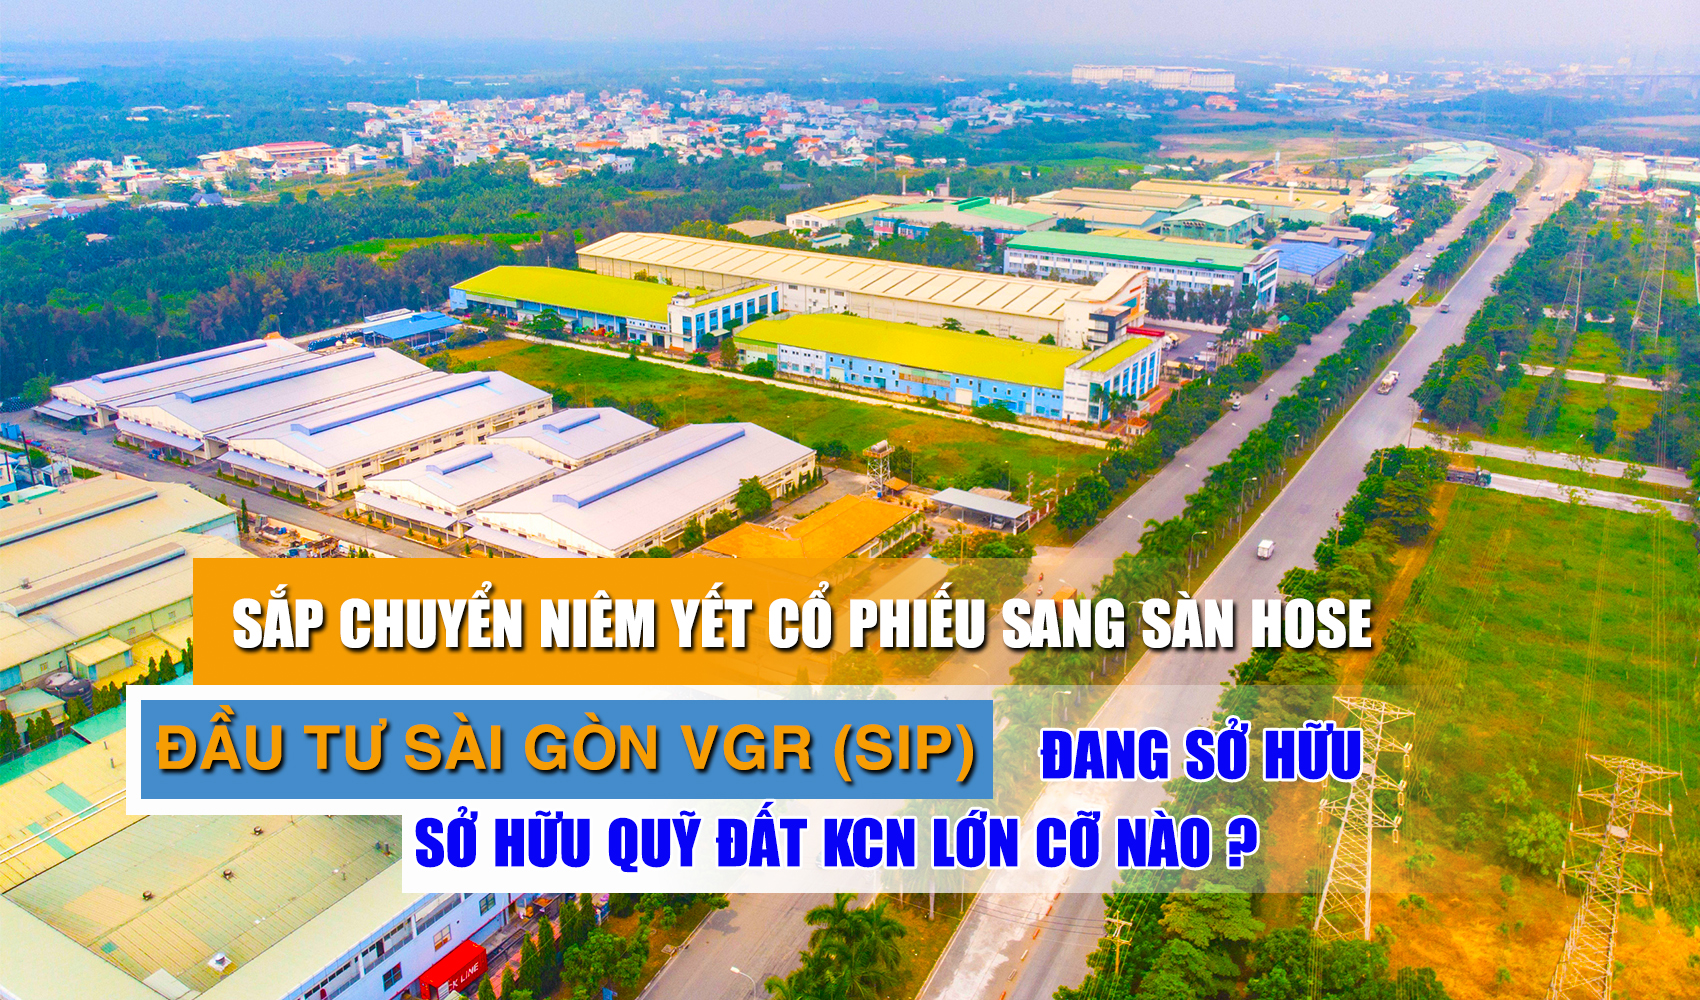 Sắp chuyển niêm yết cổ phiếu sang sàn HOSE, Đầu tư Sài Gòn VGR (SIP) đang sở hữu quỹ đất KCN lớn cỡ nào?